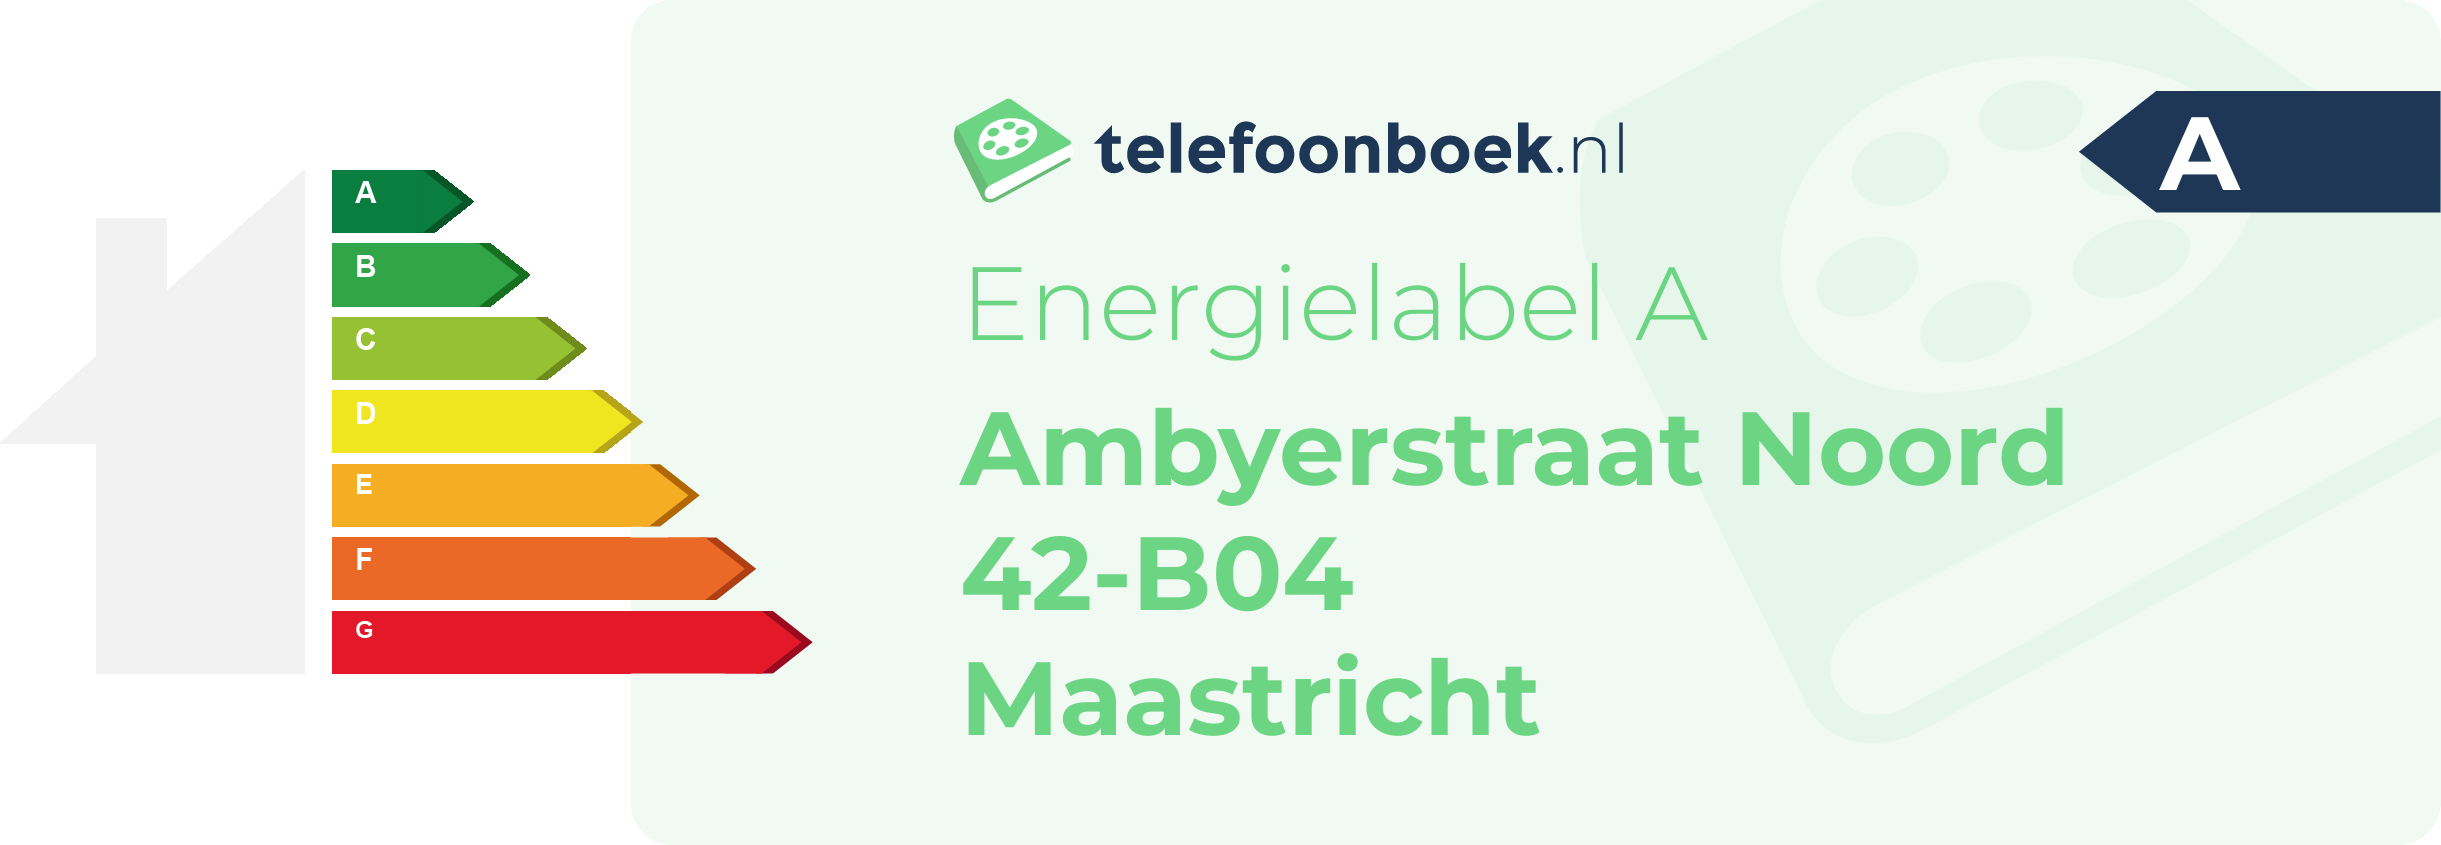 Energielabel Ambyerstraat Noord 42-B04 Maastricht